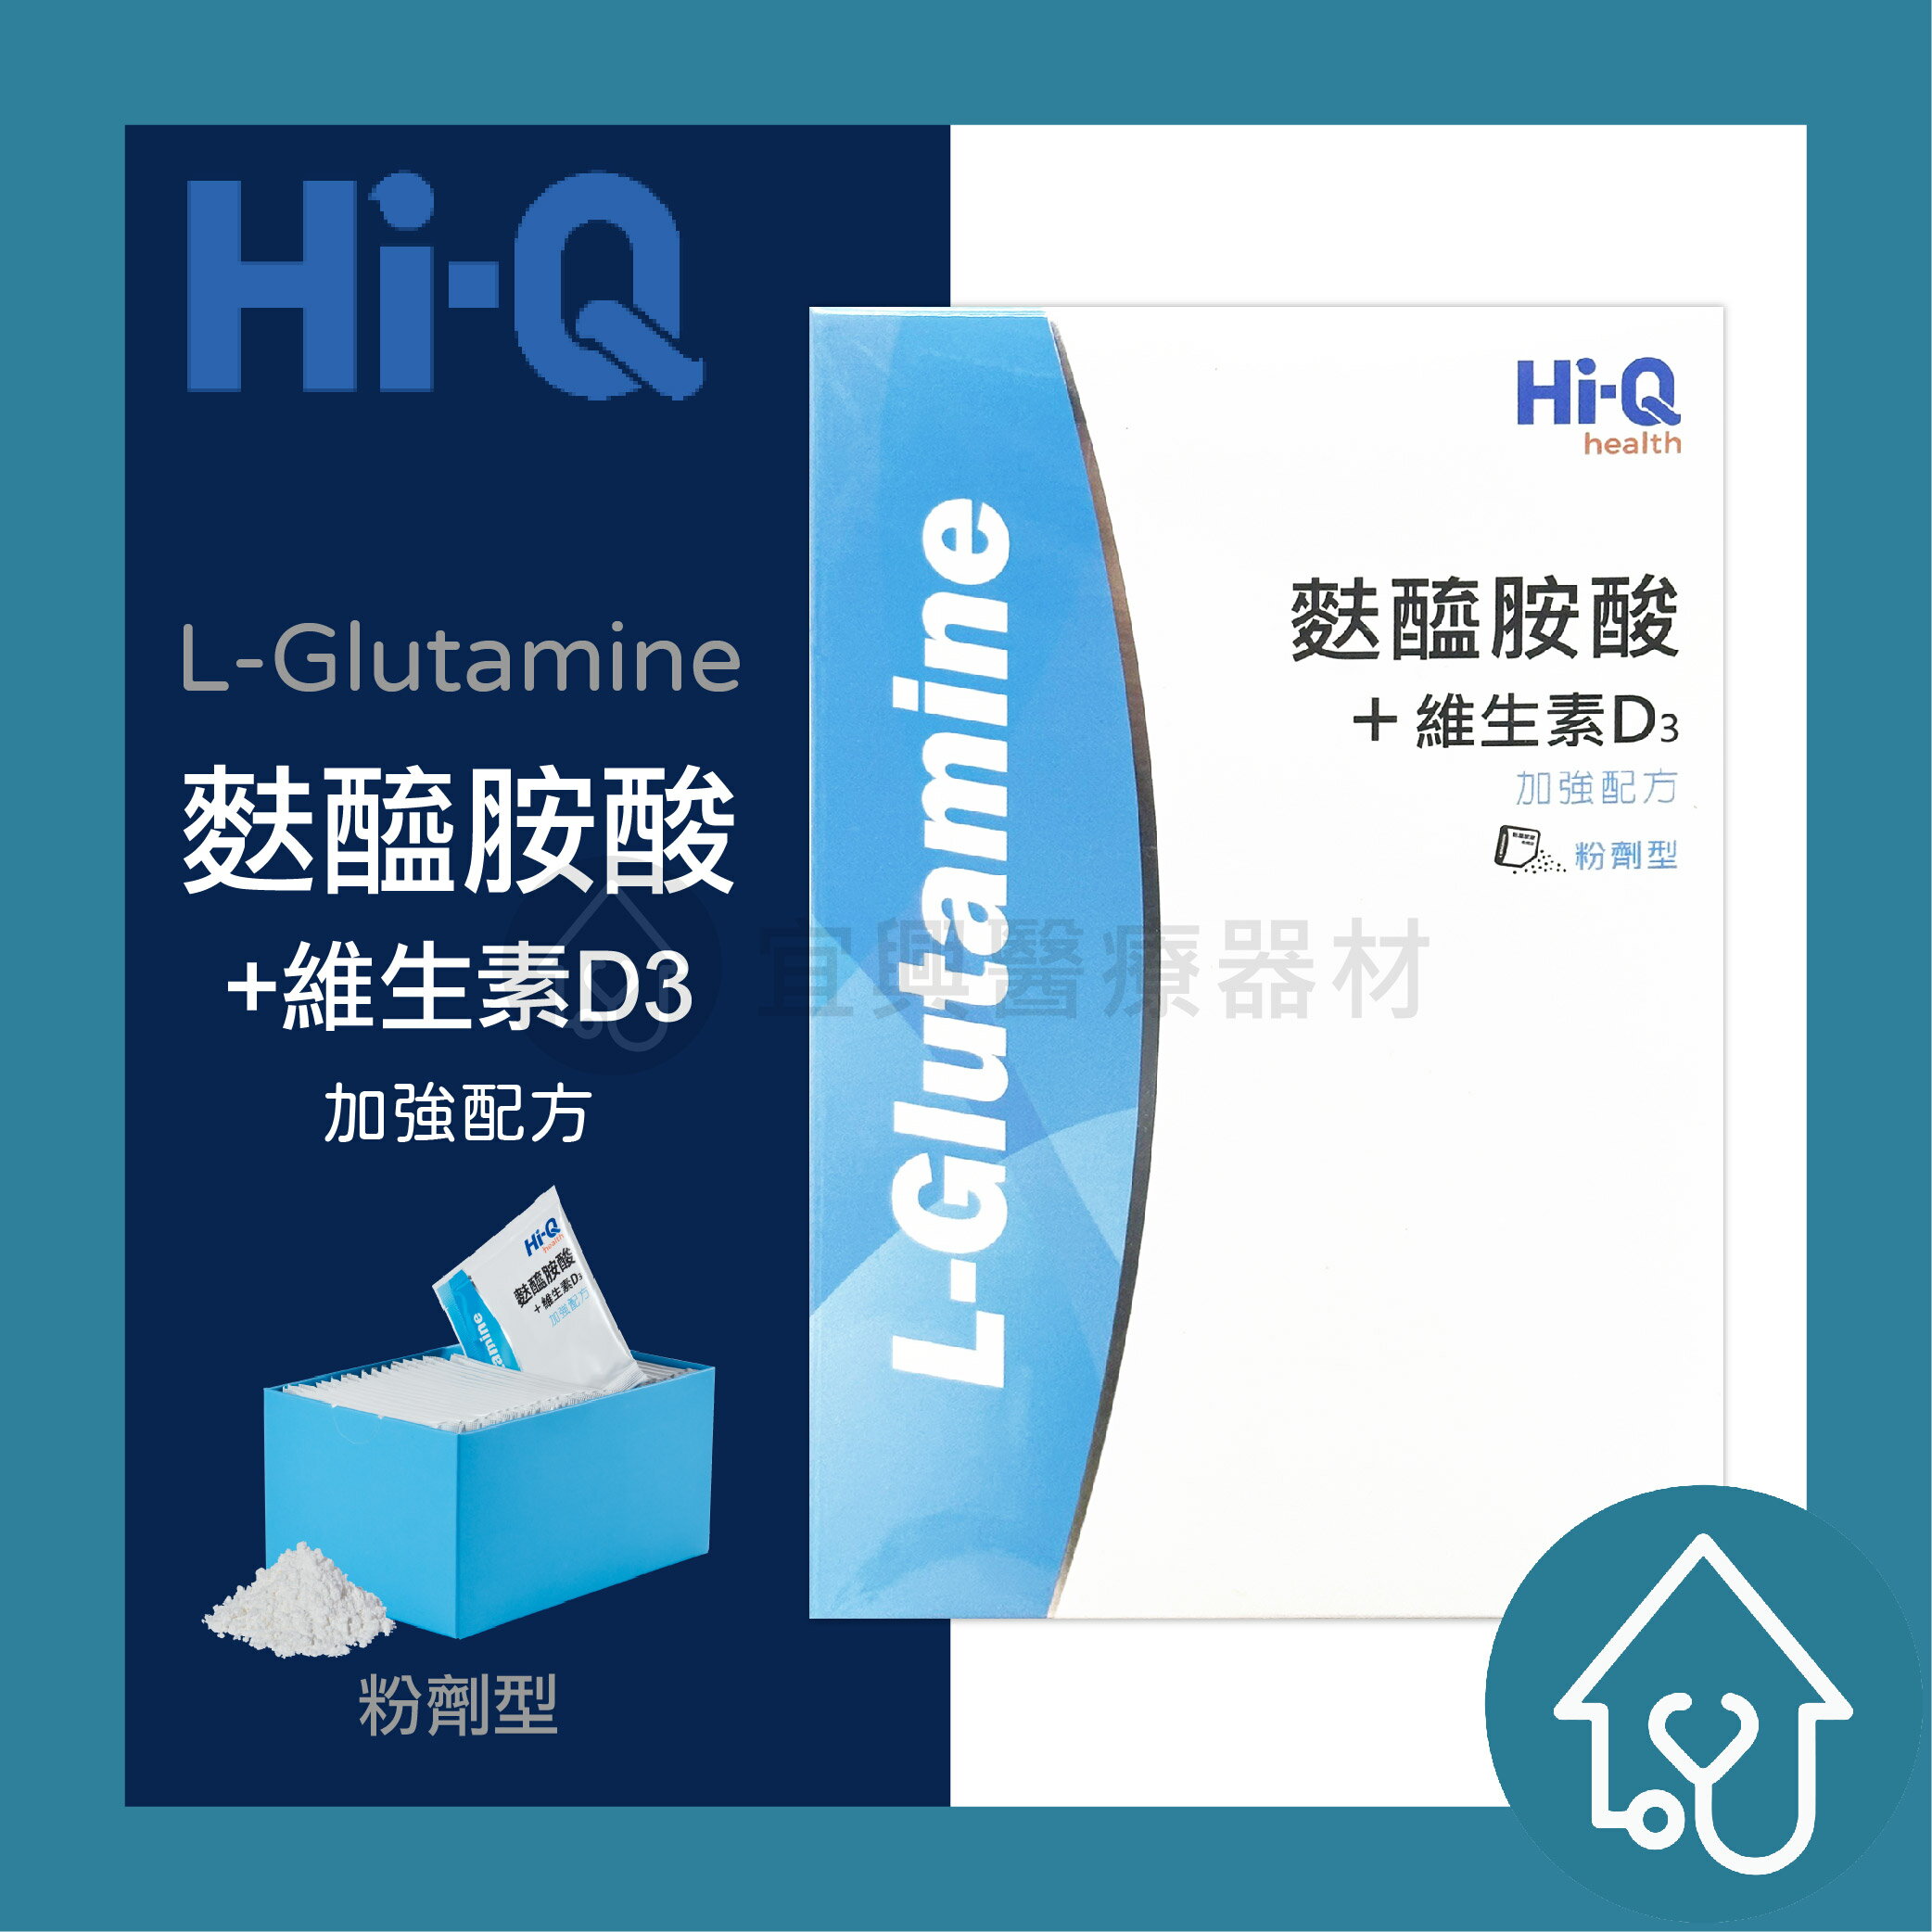 Hi-Q 麩醯胺酸+維生素D3 (30包/盒)